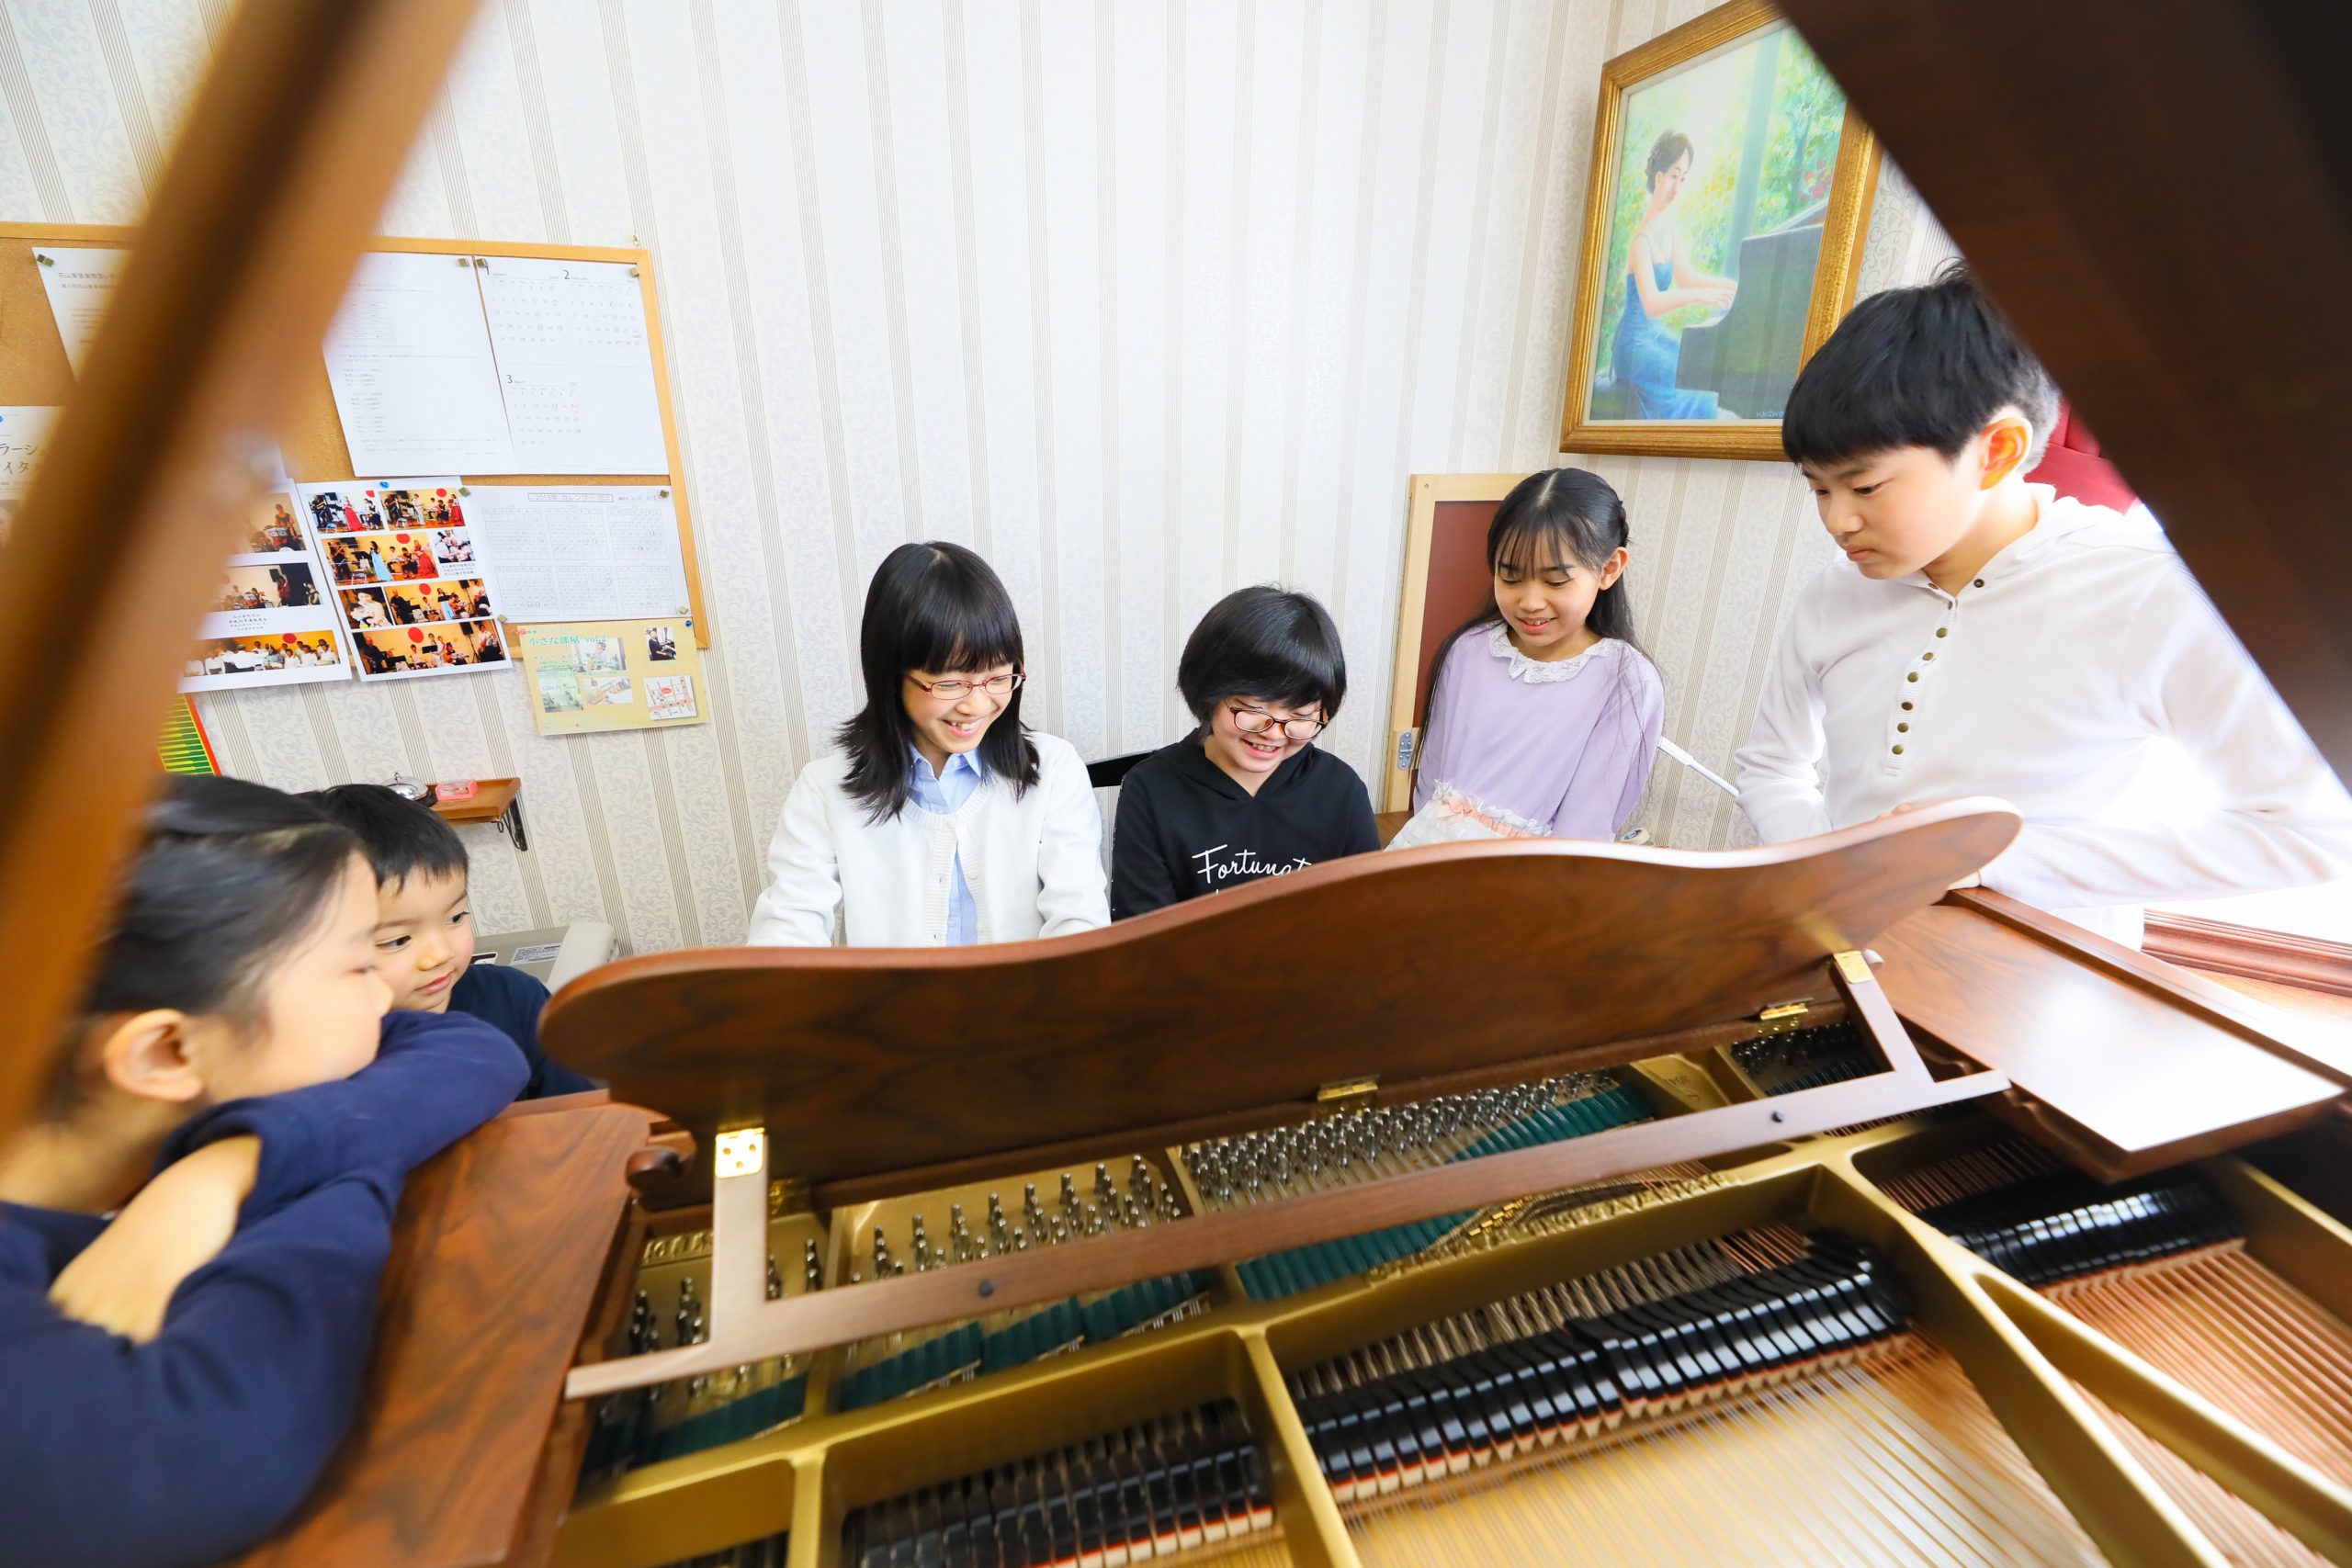 石山東音楽教室の雰囲気がわかる写真